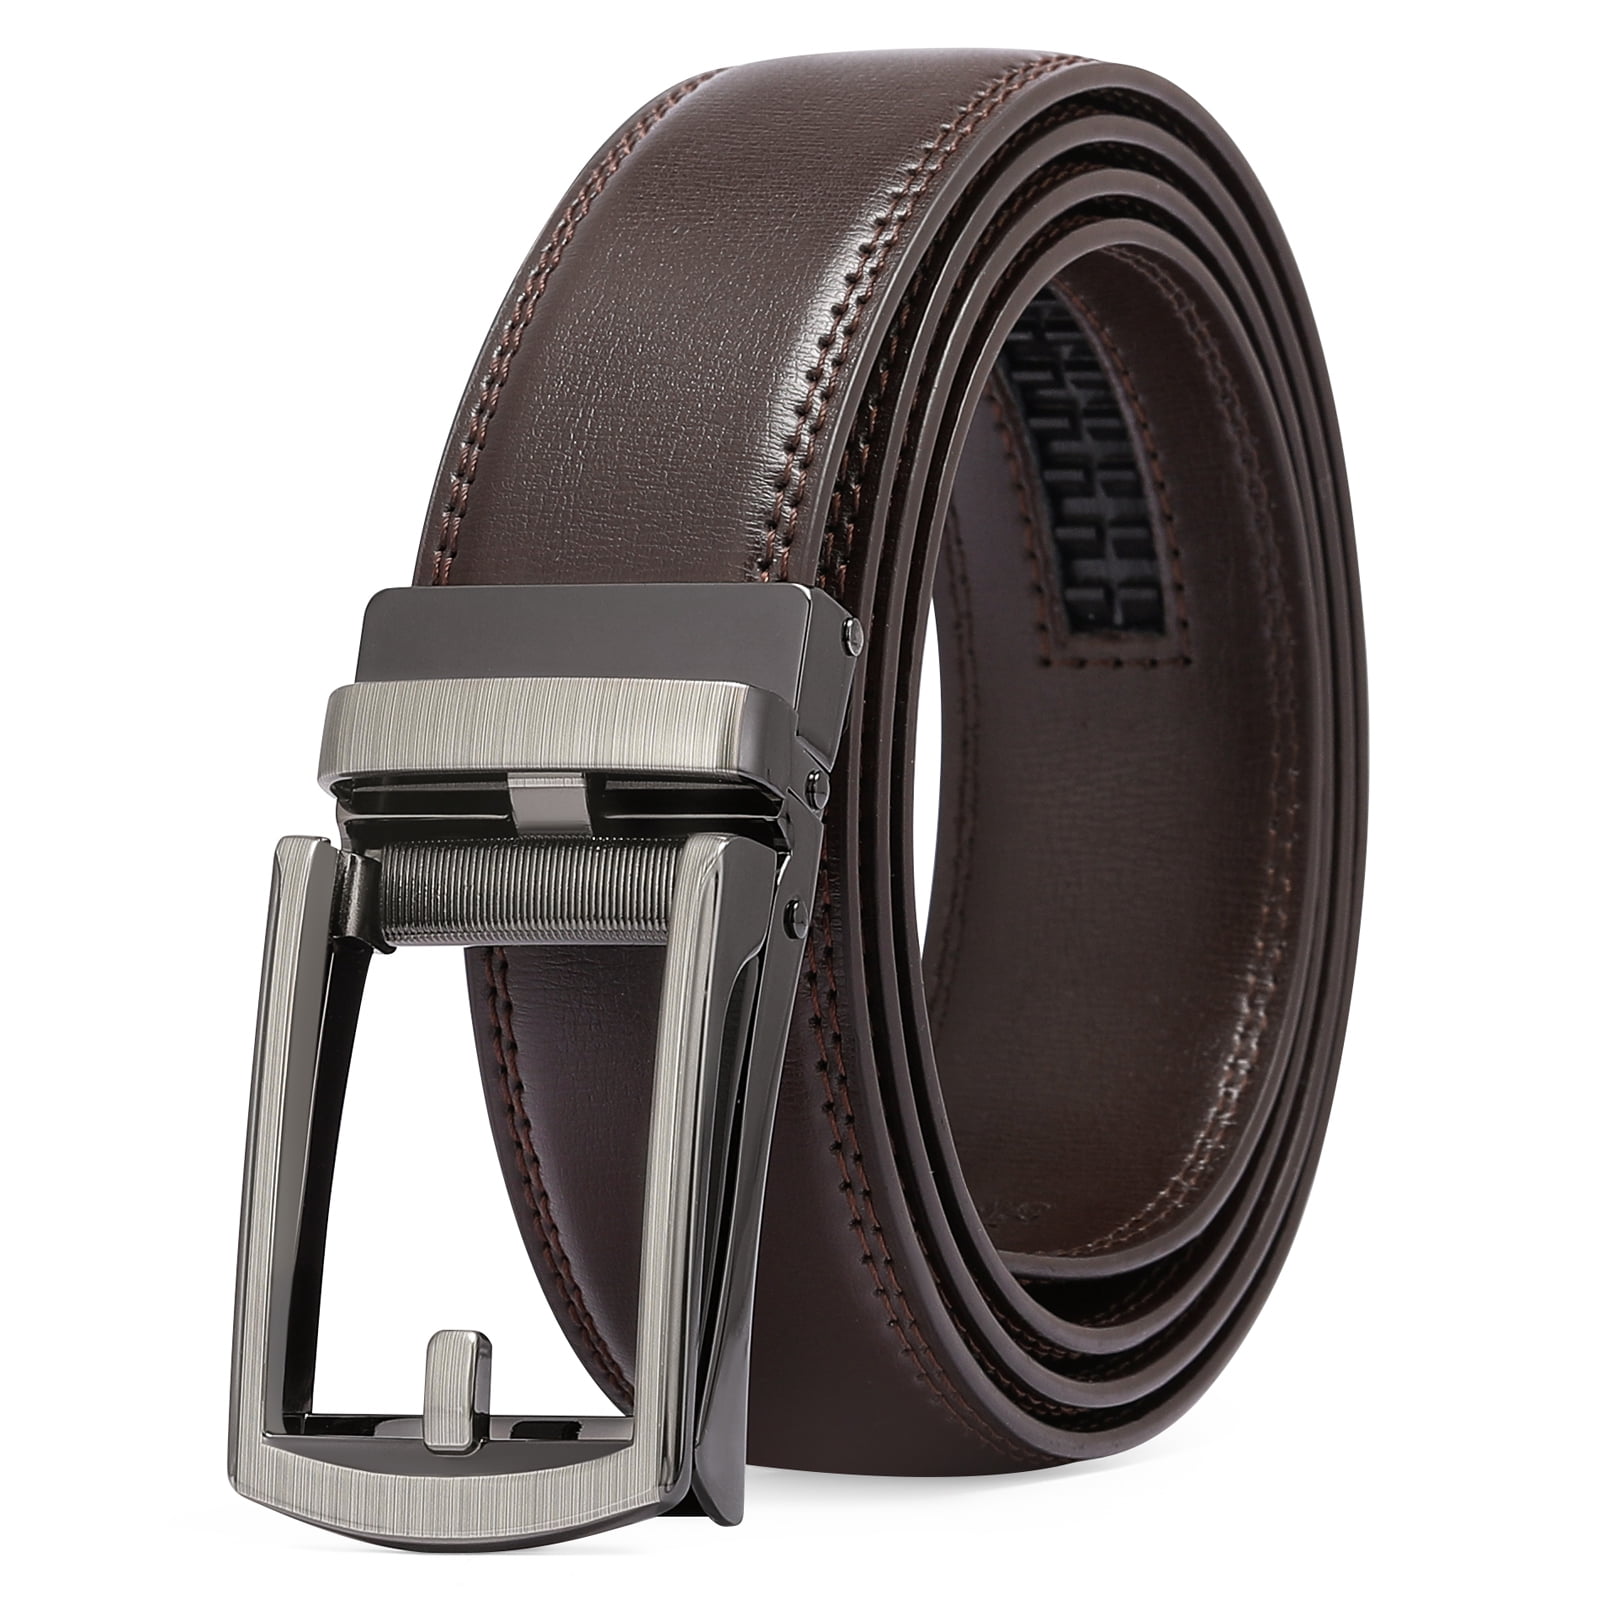 SENDEFN Leather Belt for Men Automatic Ratchet Buckle Slide Dress